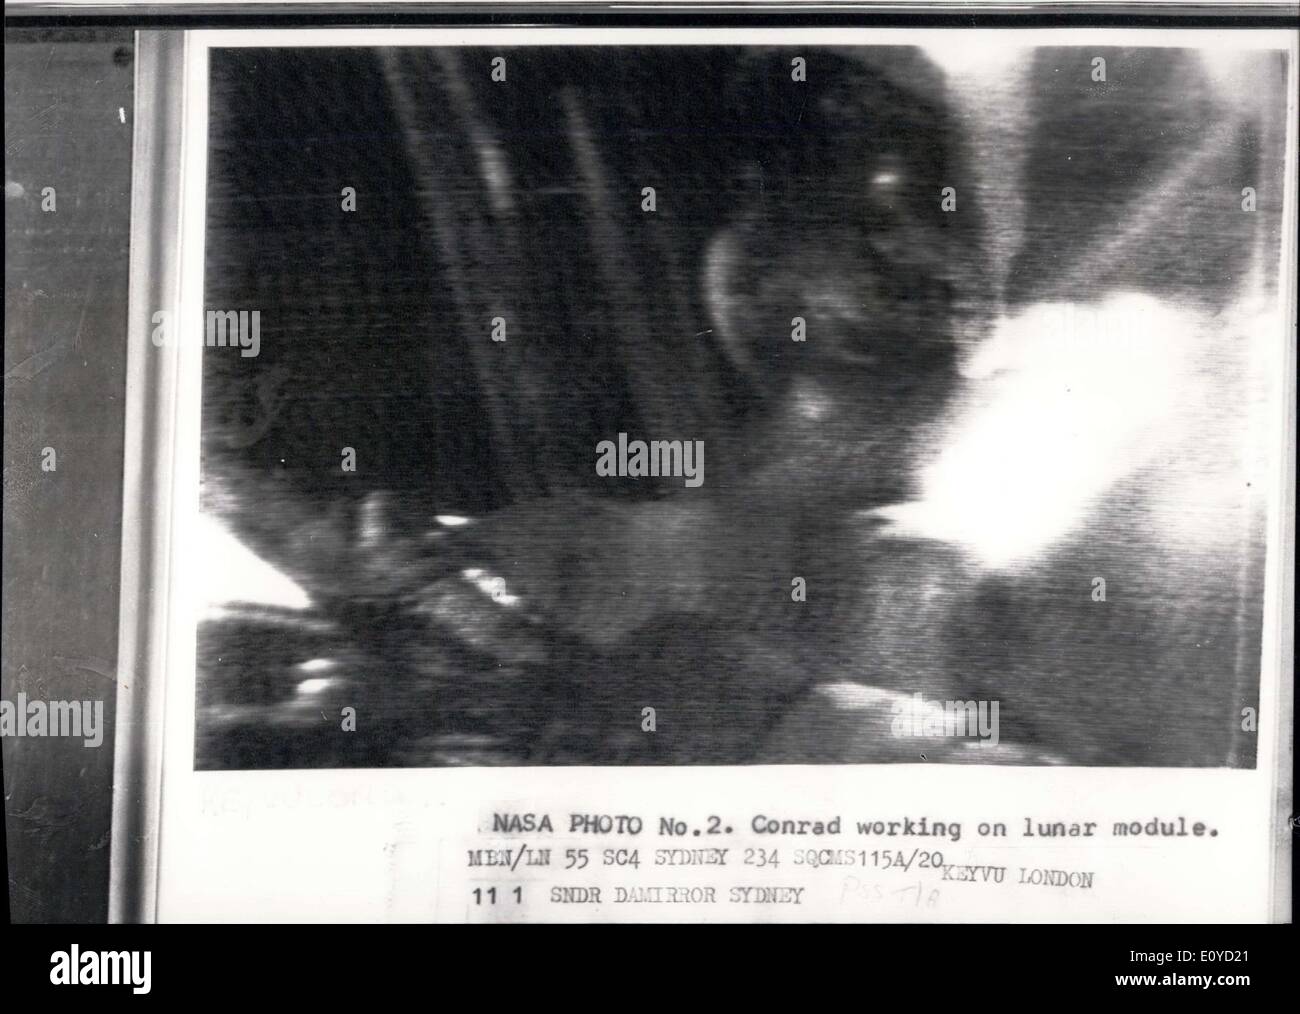 Le 20 novembre, 1969 - Caméra de télévision échoue sur Moon Walk : astronautes américains Pete Conrad et Alan Bean hier est devenu le troisième et quatrième homme jamais de marcher sur la surface de la Lune. Peu après Alan Bean avait démissionné de l'Intrepid pour rejoindre Pete Conrad, un défaut développé dans la caméra TV. Cette photo montre photo de la NASA, a signalé par radio à Londres via Sydney, Australie, montre Conrad travaillant sur le module lunaire. Conrad travaillant sur le module lunaire. Banque D'Images